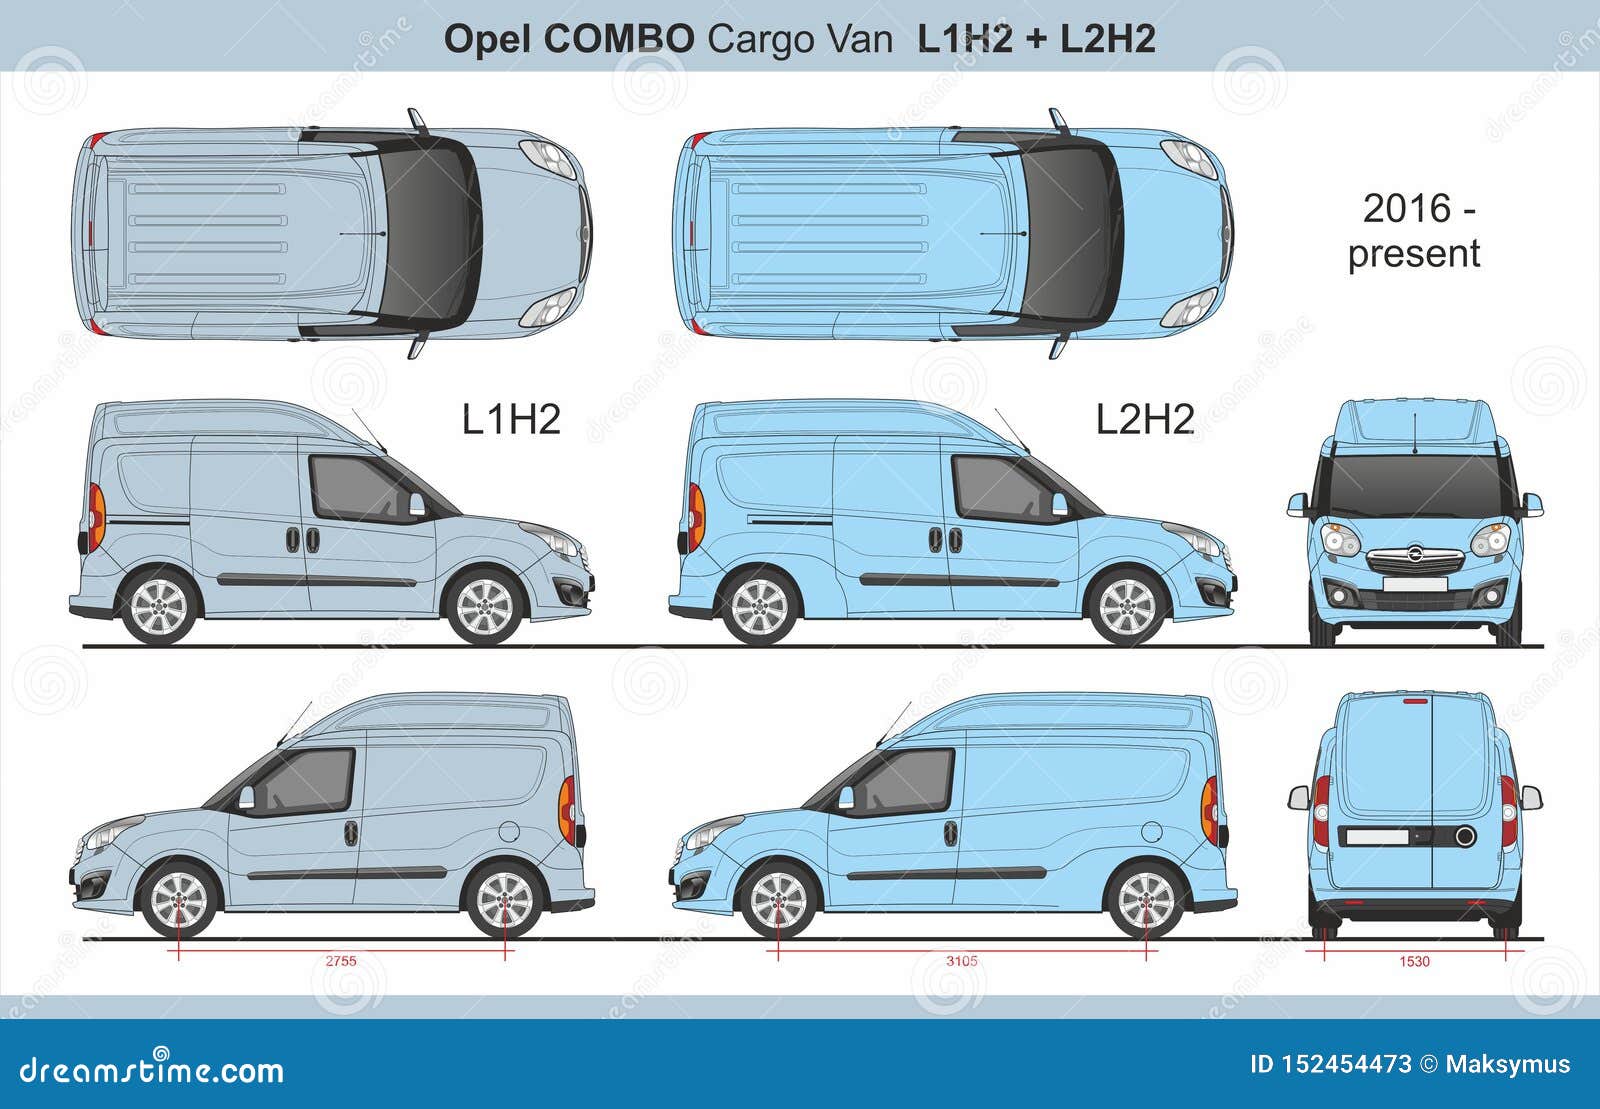 Templates - Cars - Opel - Opel Combo C